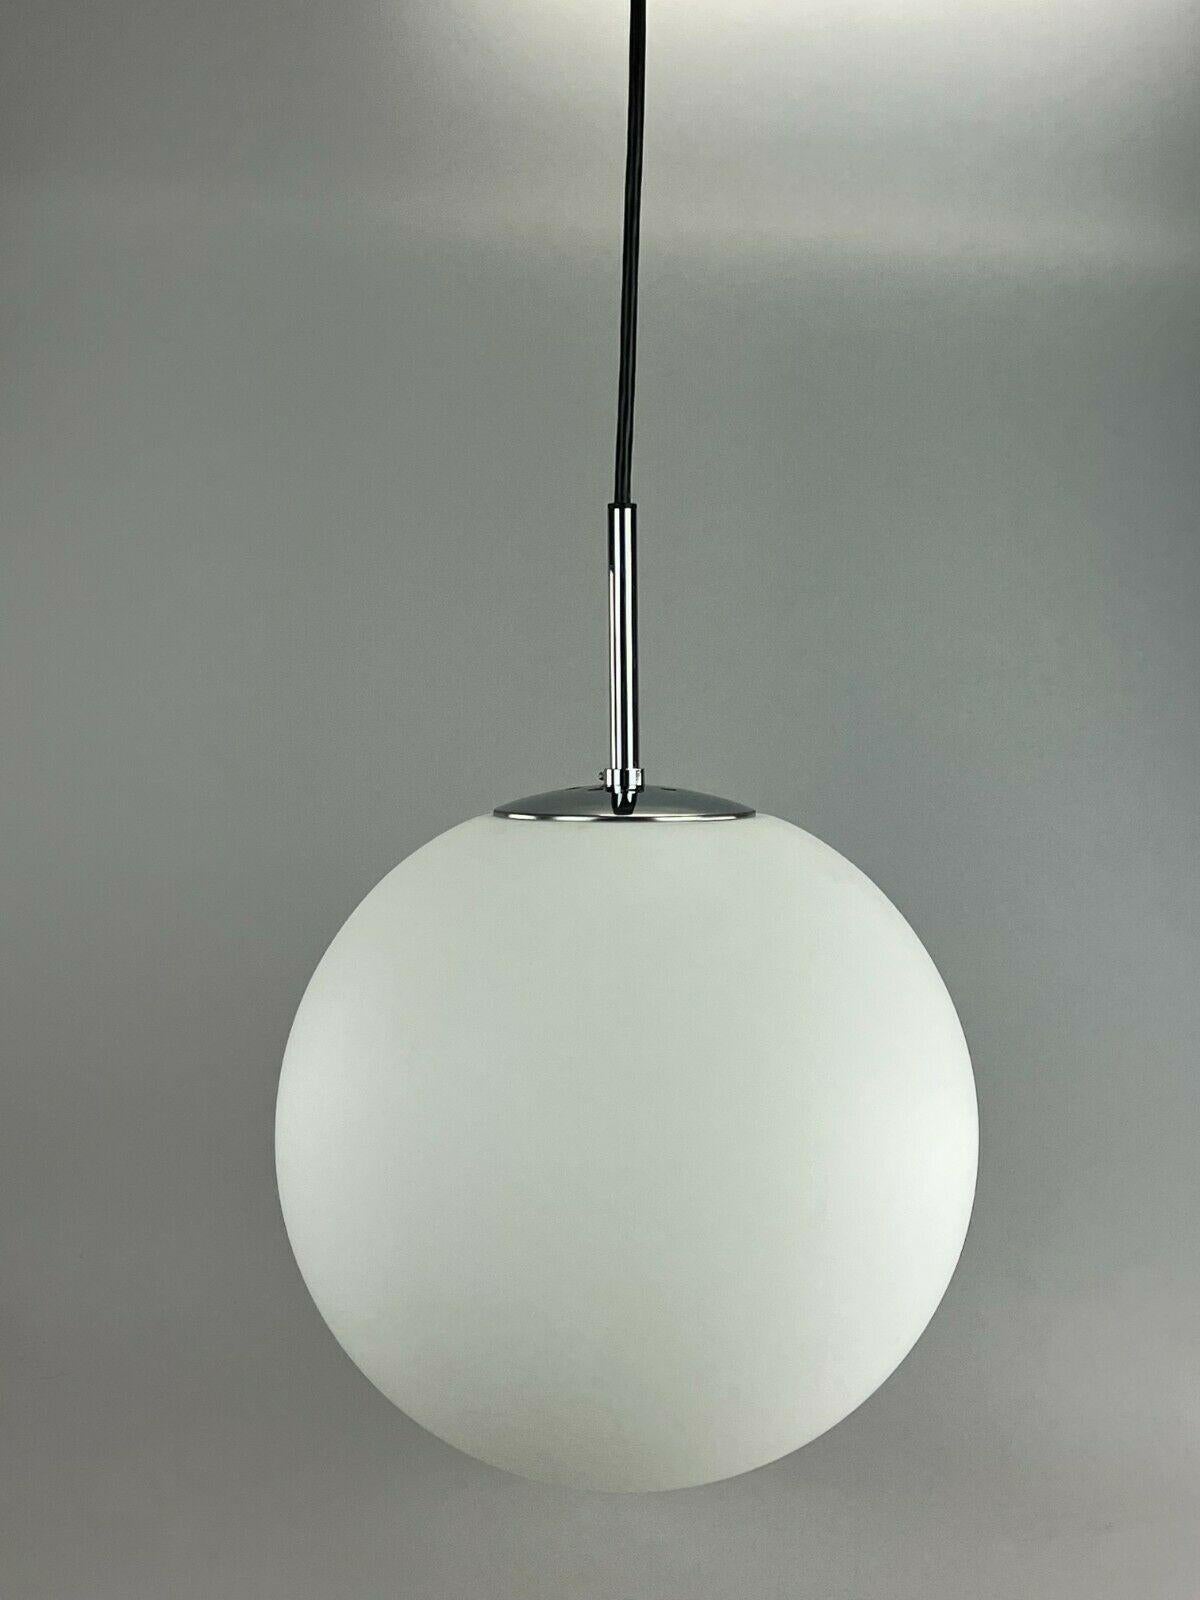 60s 70s Lamp Light Ceiling Lamp Limburg Spherical Lamp Ball Design 60s For Sale 1